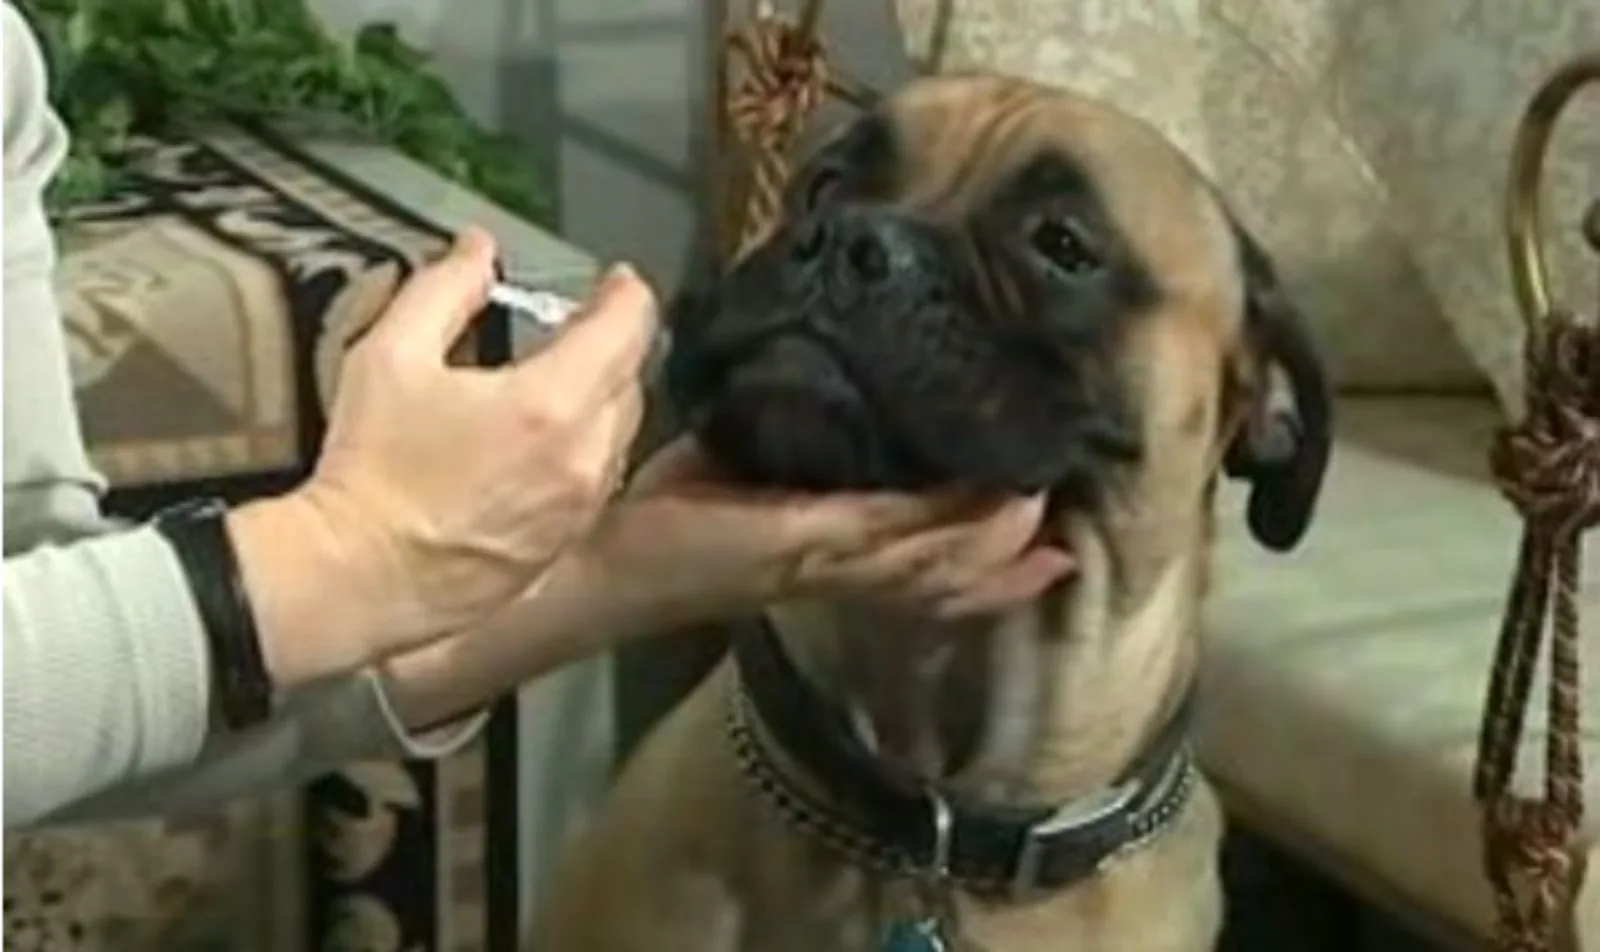 Dog receiving liquid medication